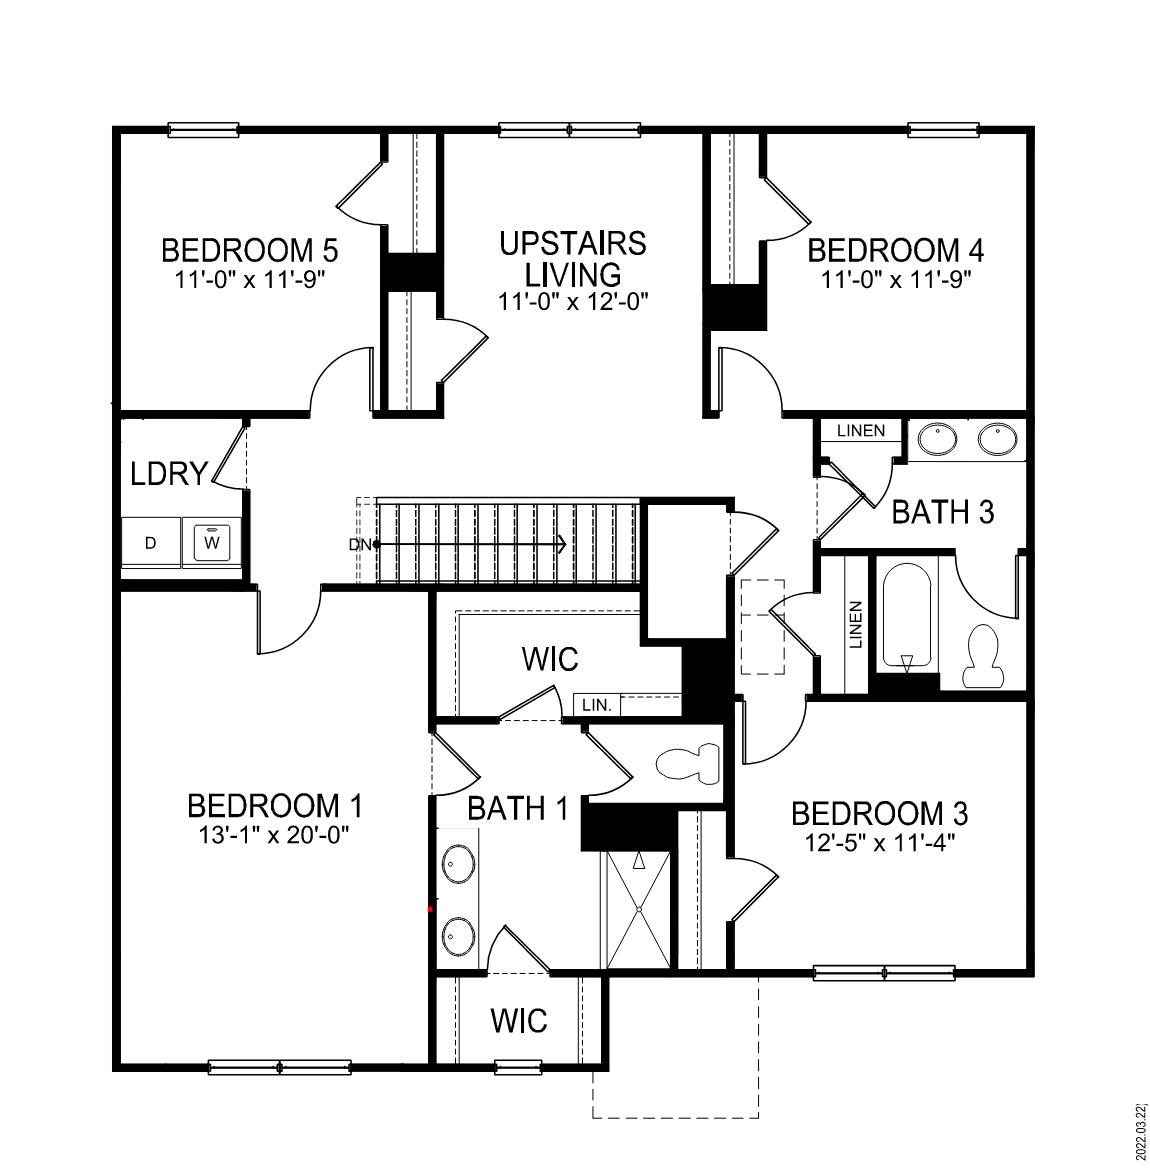 Hayden second floor plan